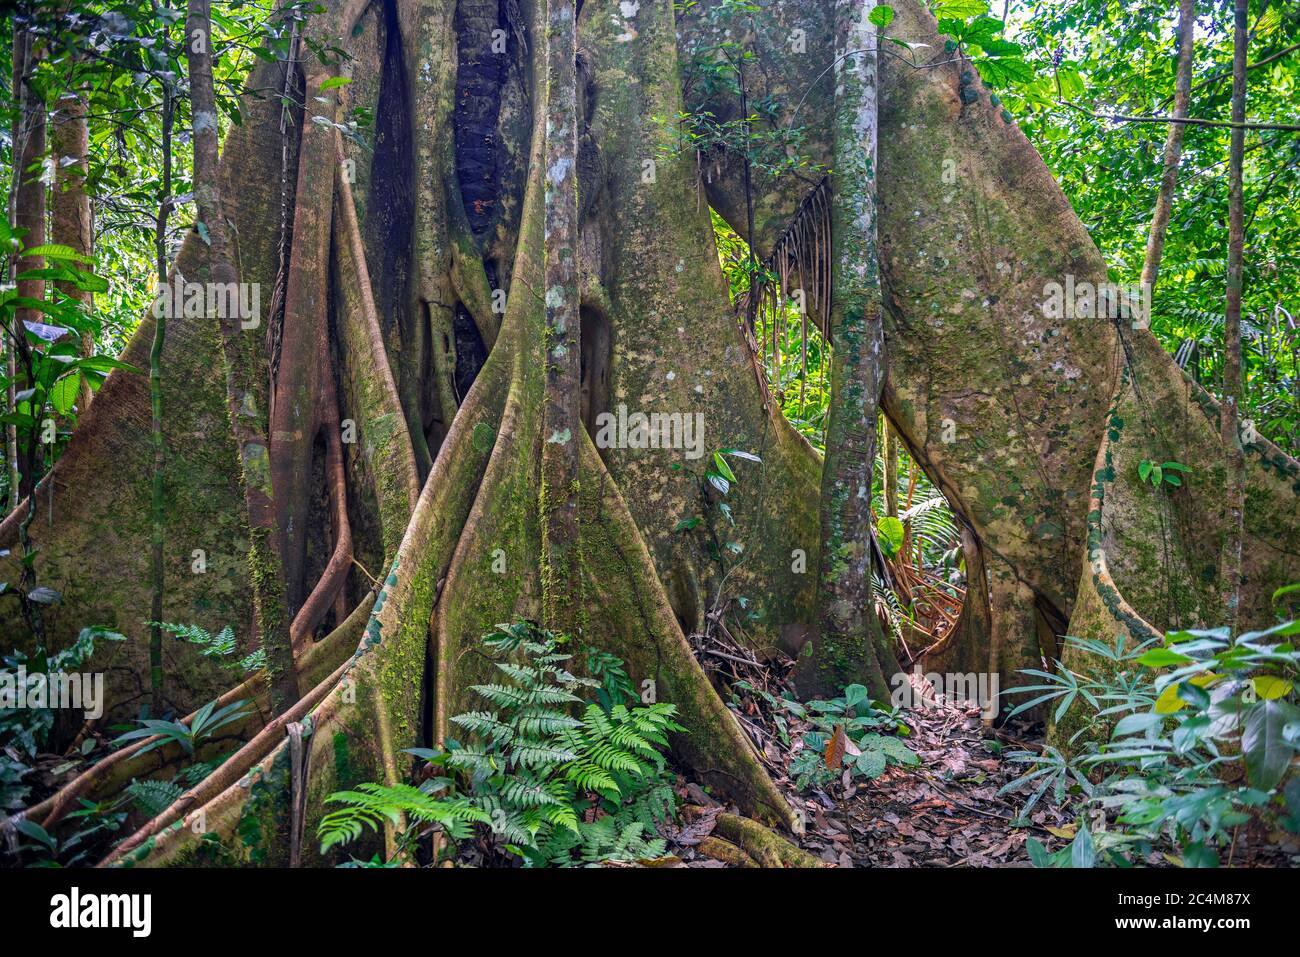 Basis eines ceiba Baumstammes (Ceiba pentandra) im Amazonas Regenwald, Yasuni Nationalpark, Ecuador. Unscharfe Vordergrundpflanzen, scharfer Baum. Stockfoto